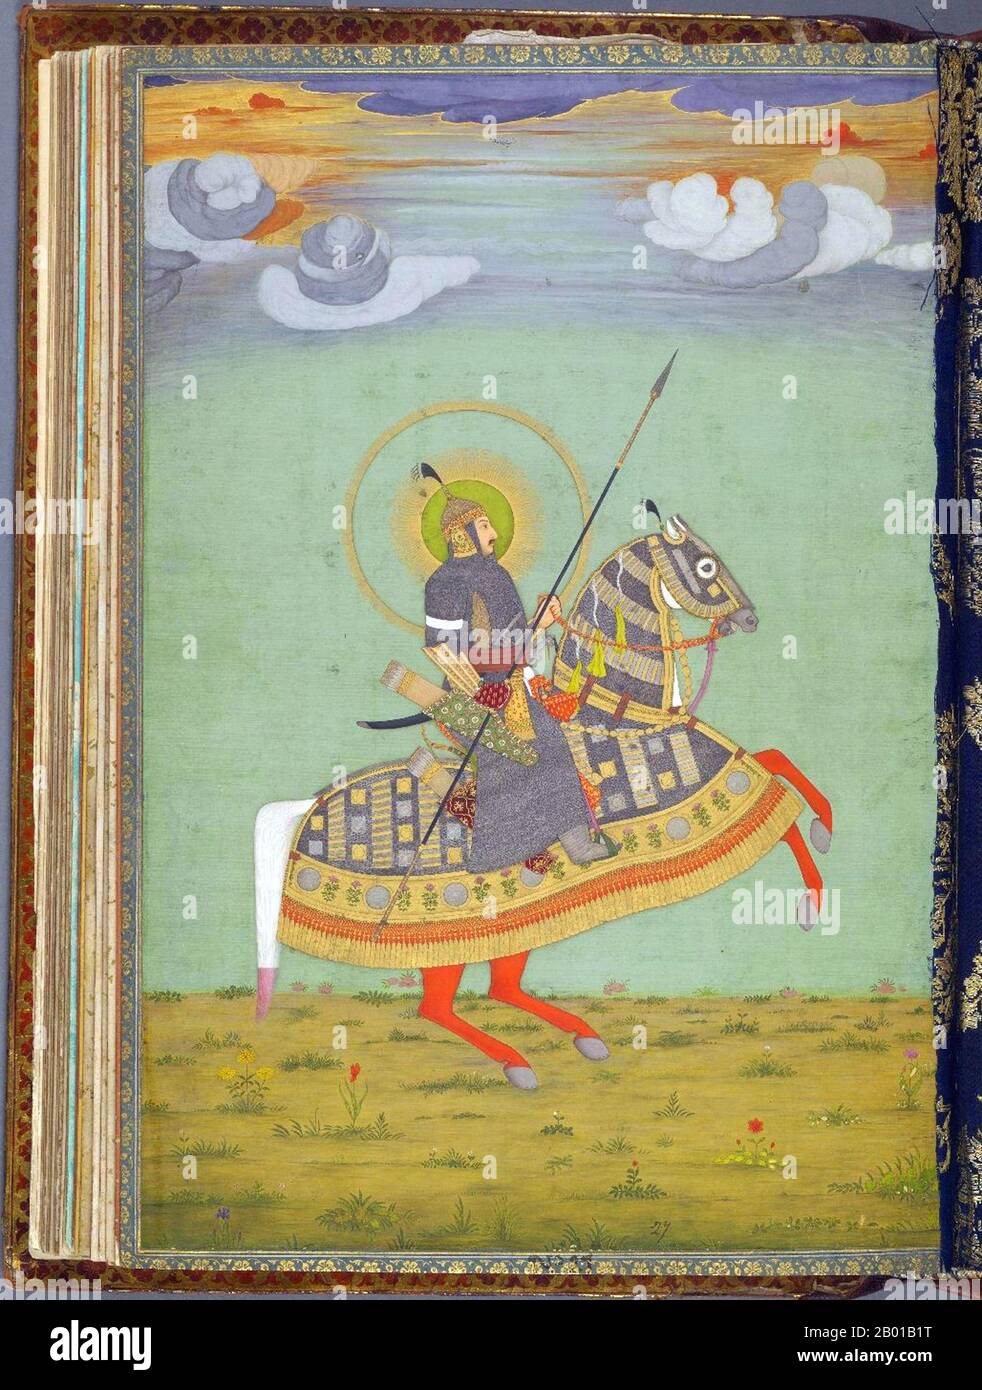 India: Mughal principe equitazione a cavallo in piena armatura. Pittura in miniatura, c.. 1640. Pittura in miniatura del periodo Mughal da un album che presenta i ritratti di Timur the Great e dei suoi discendenti, metà del 17th secolo. Foto Stock